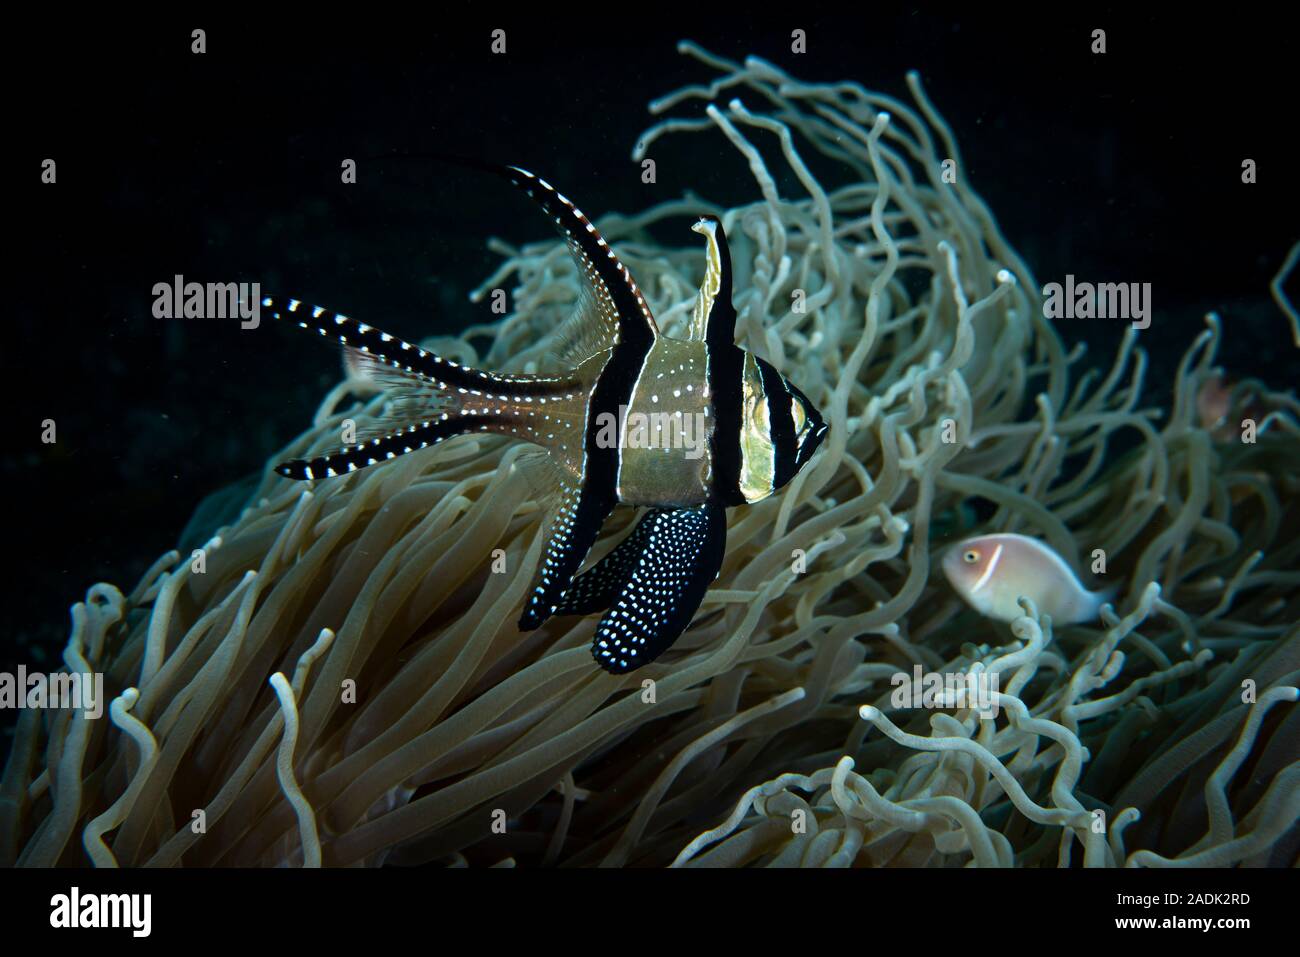 Banggai Cardinalfish Pterapogon kauderni Stock Photo